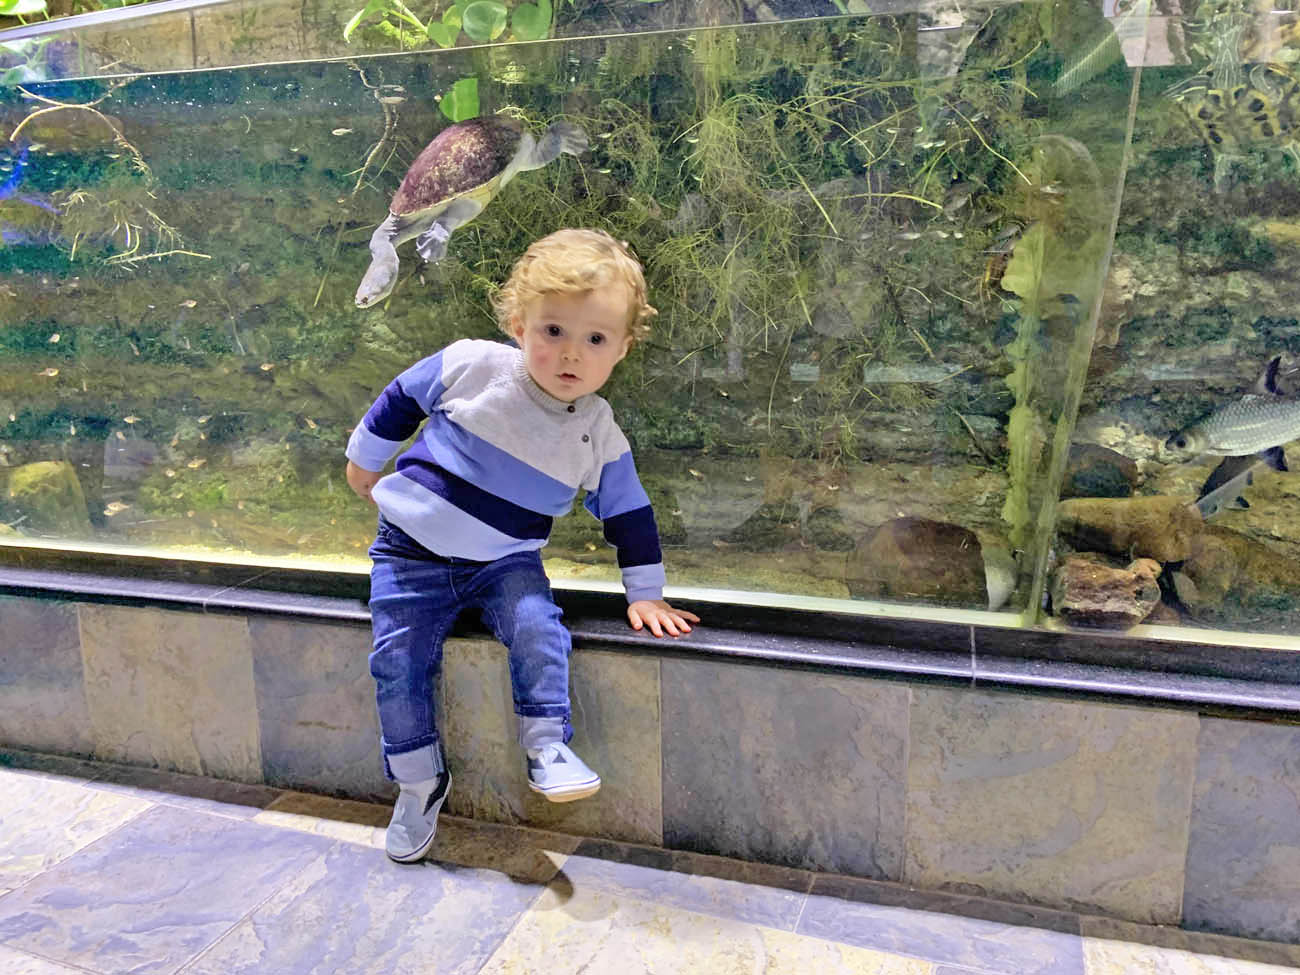 Dubai Aquarium and Underwater Zoo - Dubai Mall